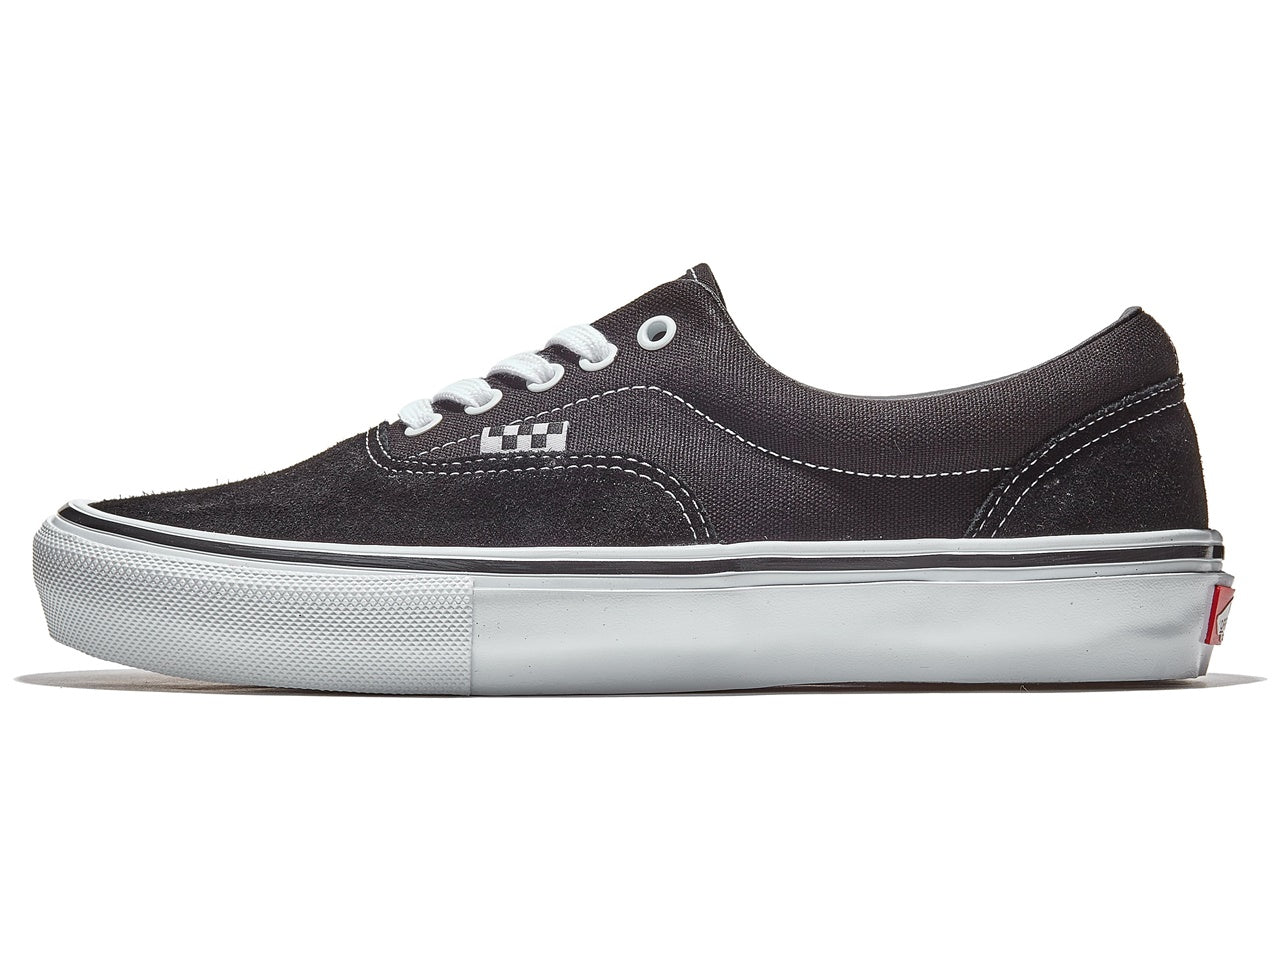 รองเท้า VANS Skate Era - สีดำ/ขาว 7US